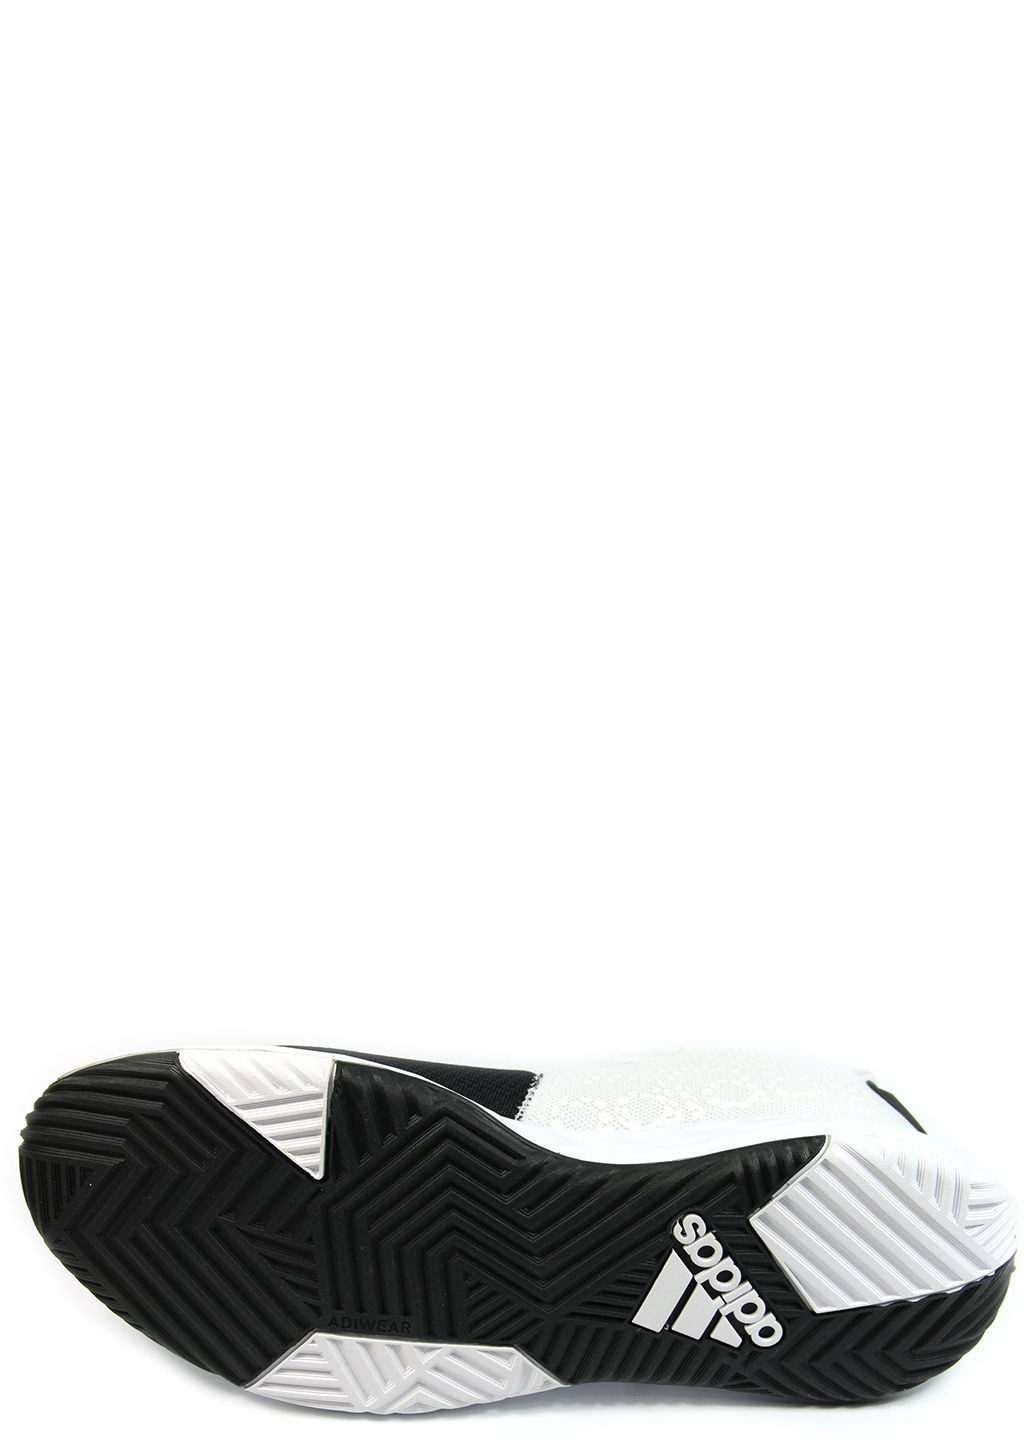 Черно-белые демисезонные мужские кроссовки ownthegame if2689 adidas